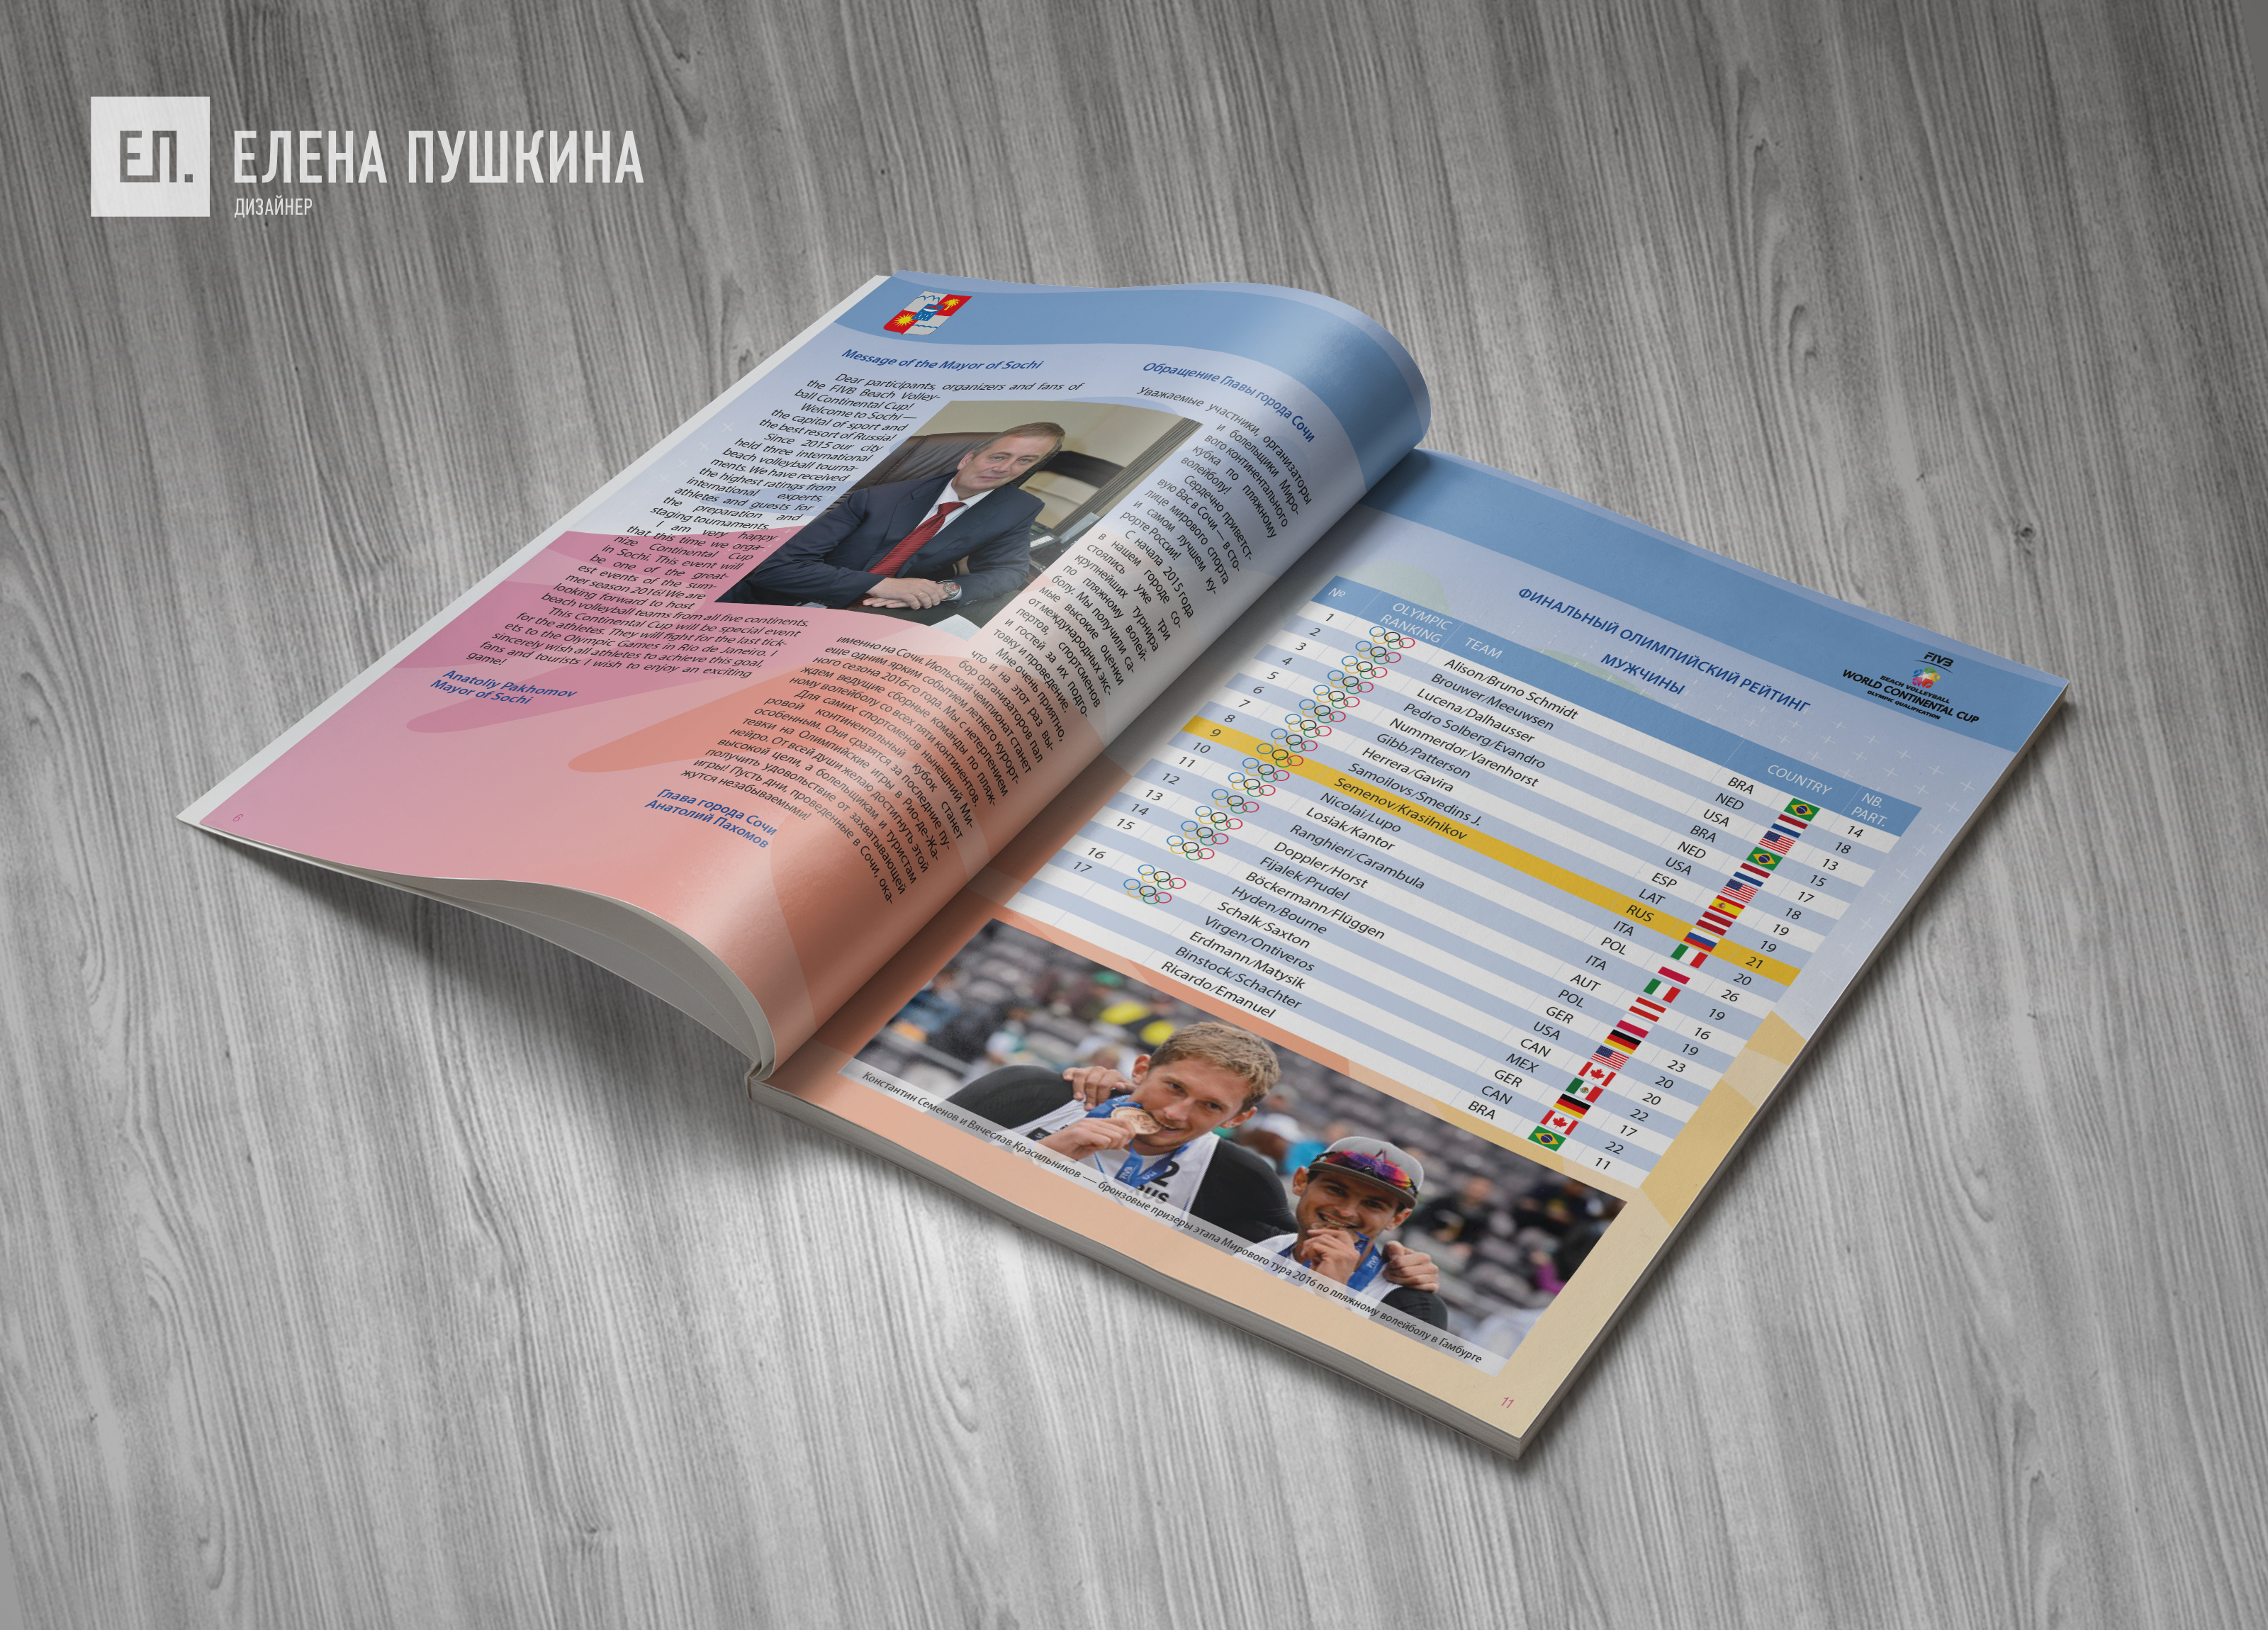 «Мировой континентальный кубок 2016 по пляжному волейболу» — разработка дизайна с «нуля» и вёрстка брошюры Дизайн каталогов Портфолио